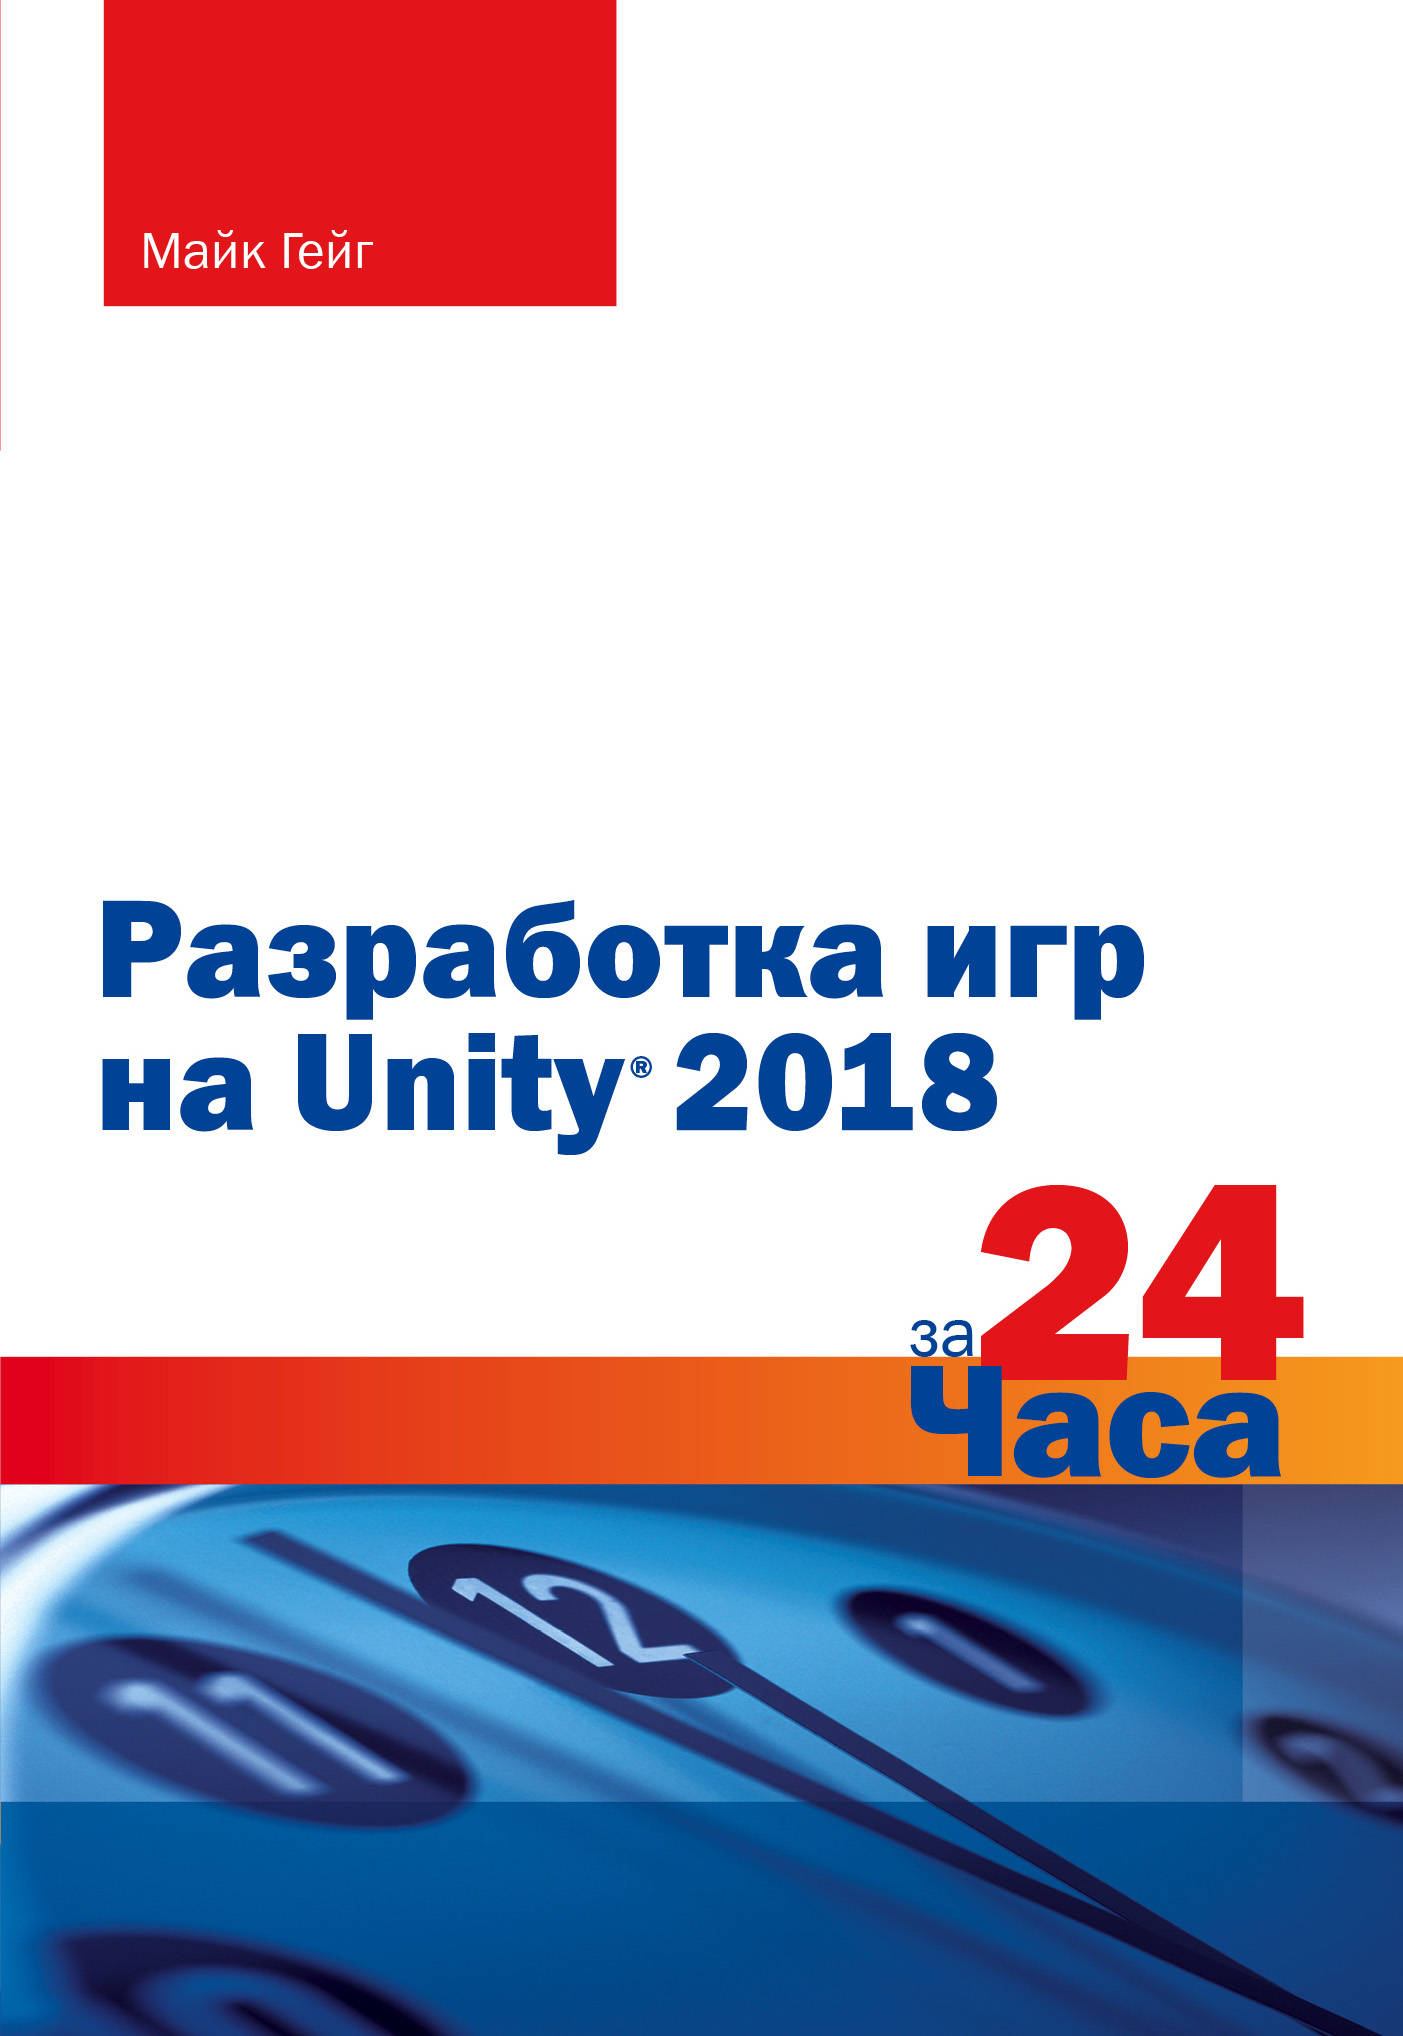    Unity 2018  24 